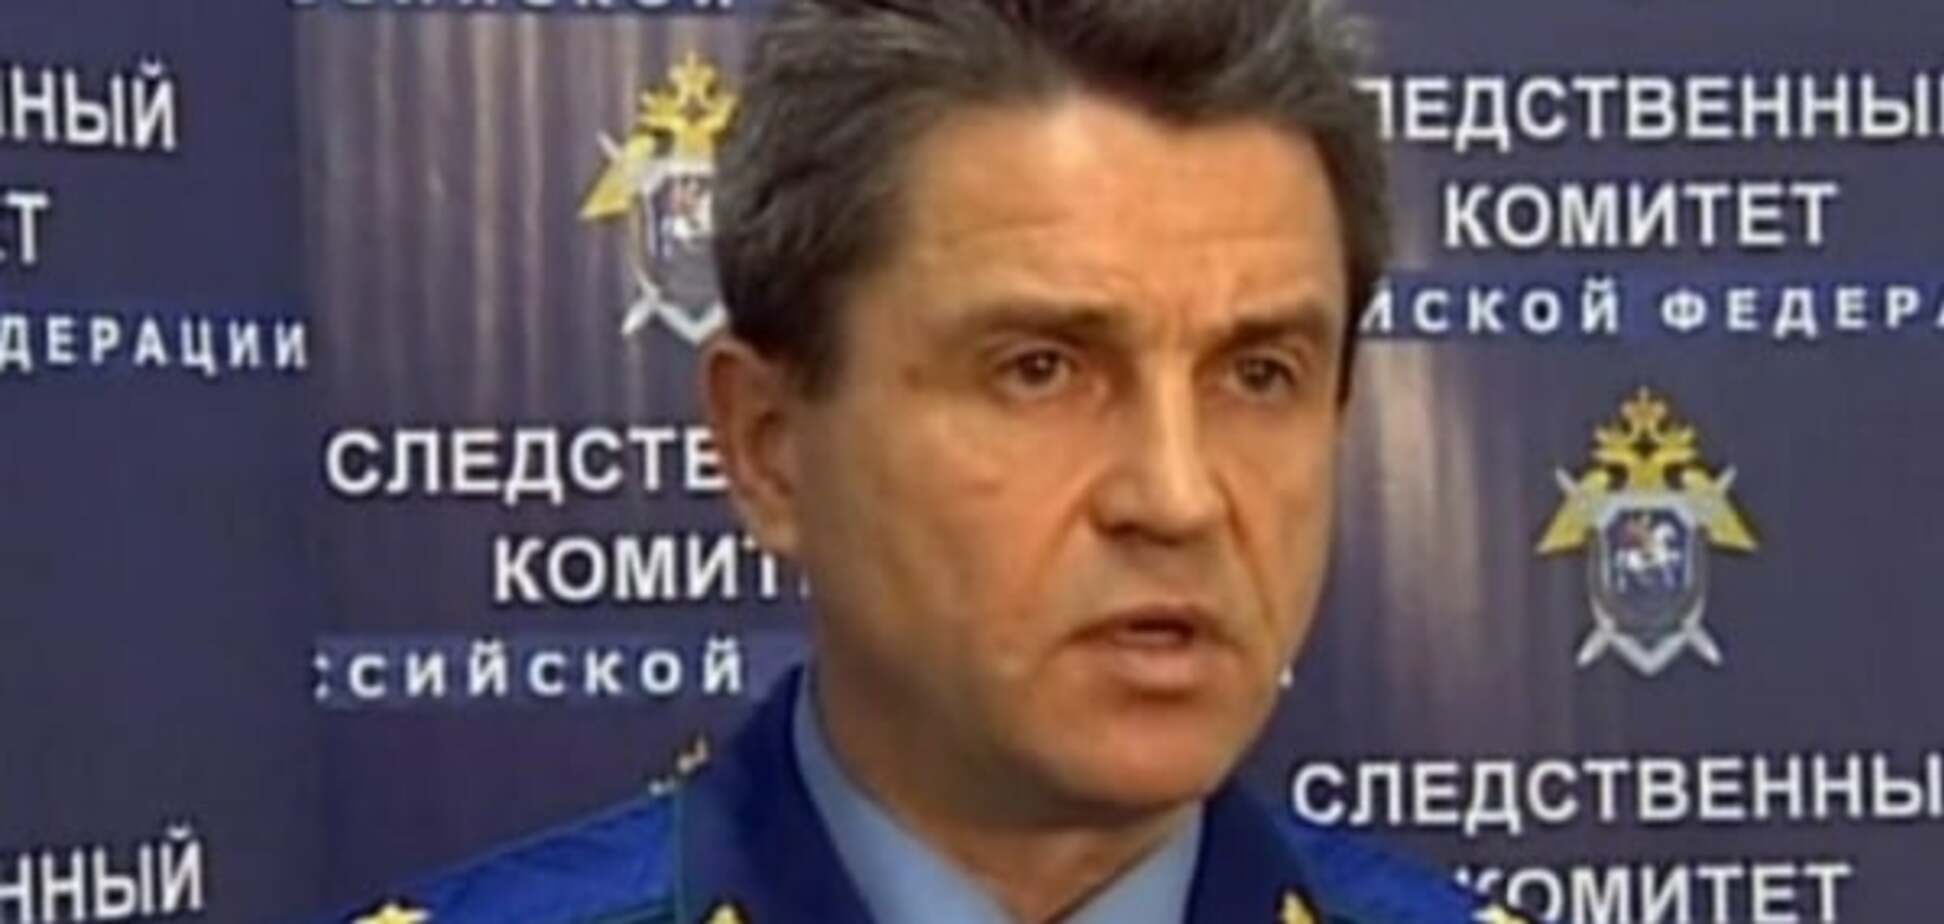 Путин назначил на высокий пост генерал-майора, который занимался делом Савченко